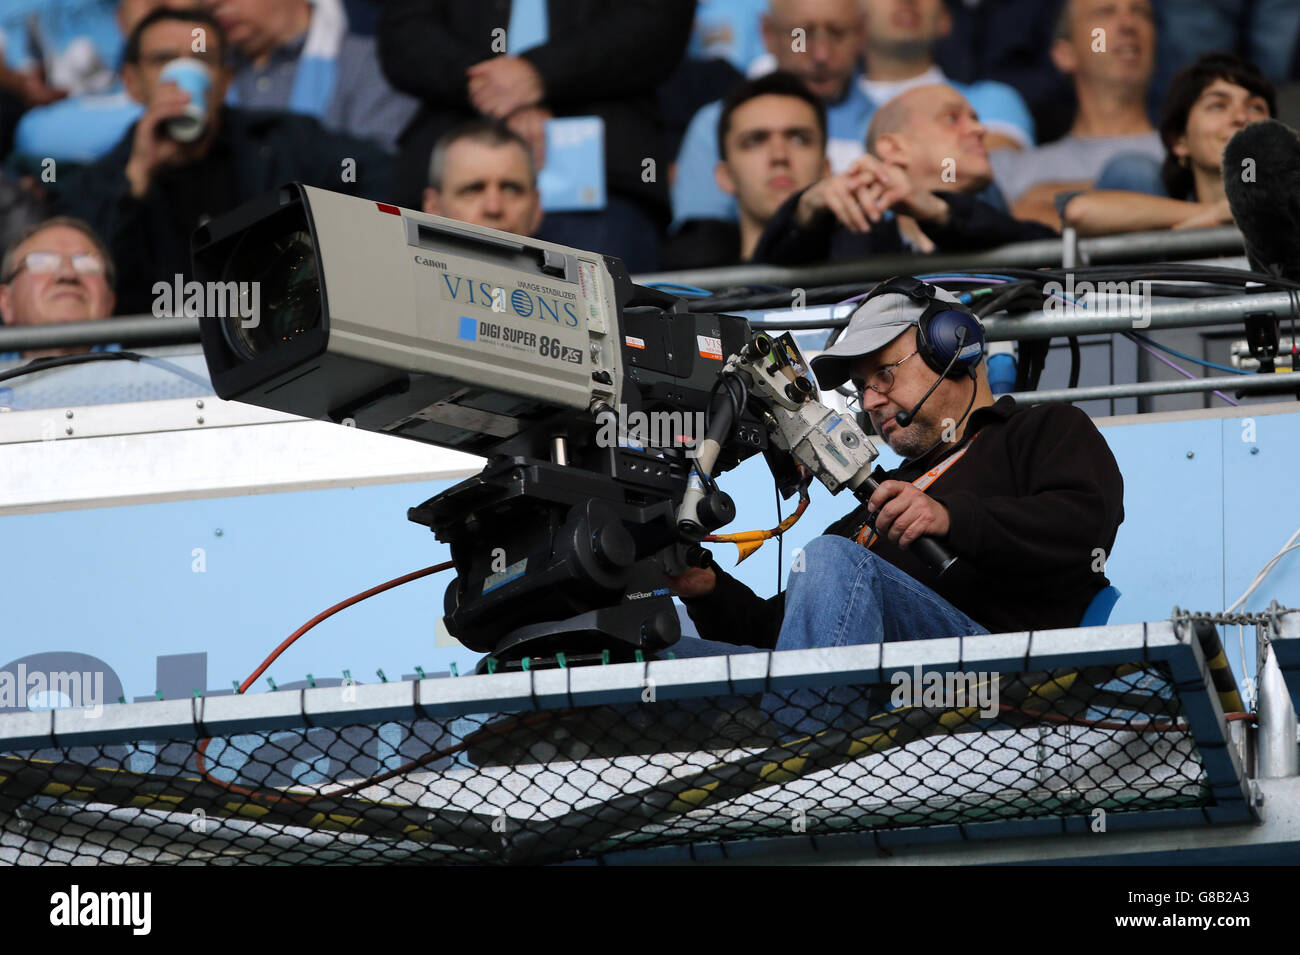 Fútbol - Barclays Premier League - Manchester City contra West Ham United - Etihad Stadium. Una cámara de televisión y un operador de cámara Foto de stock